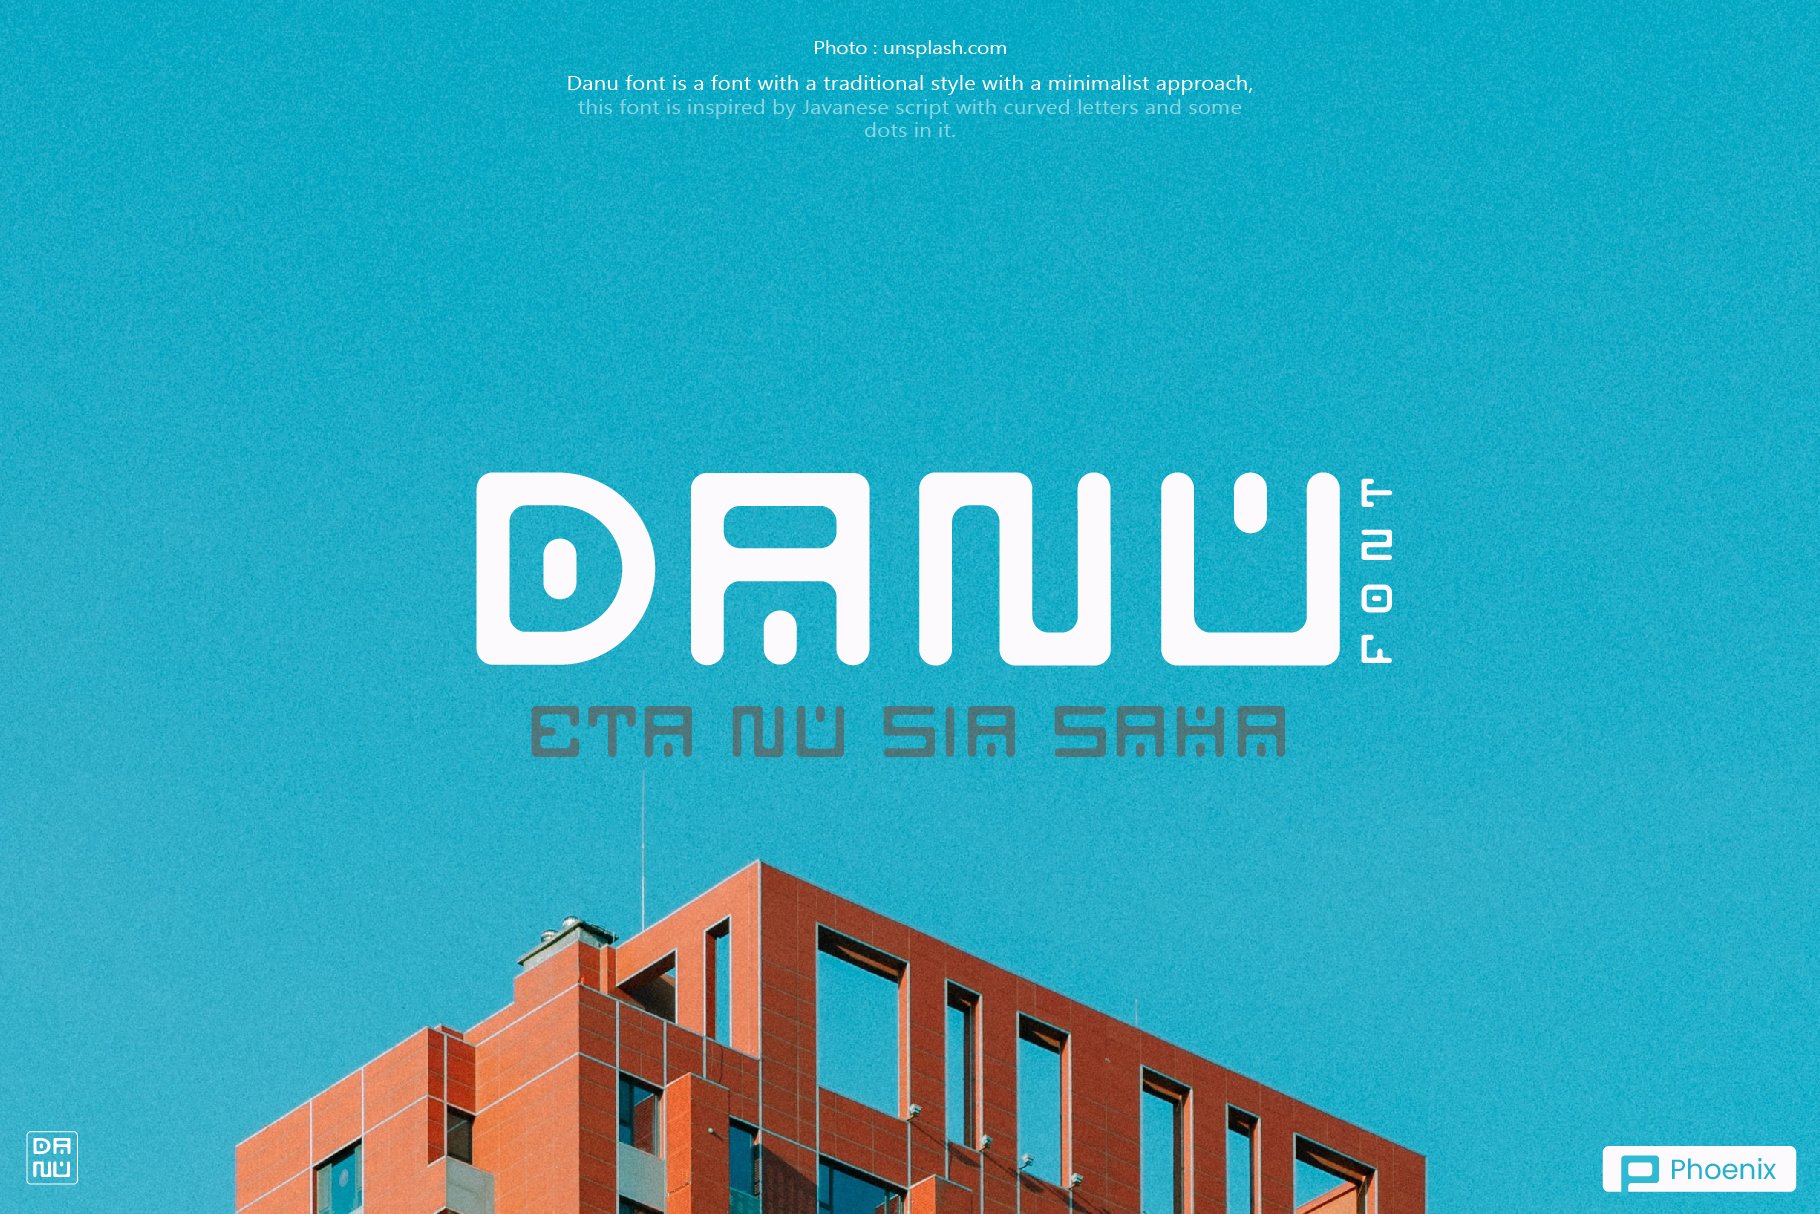 Danu Font cover image.